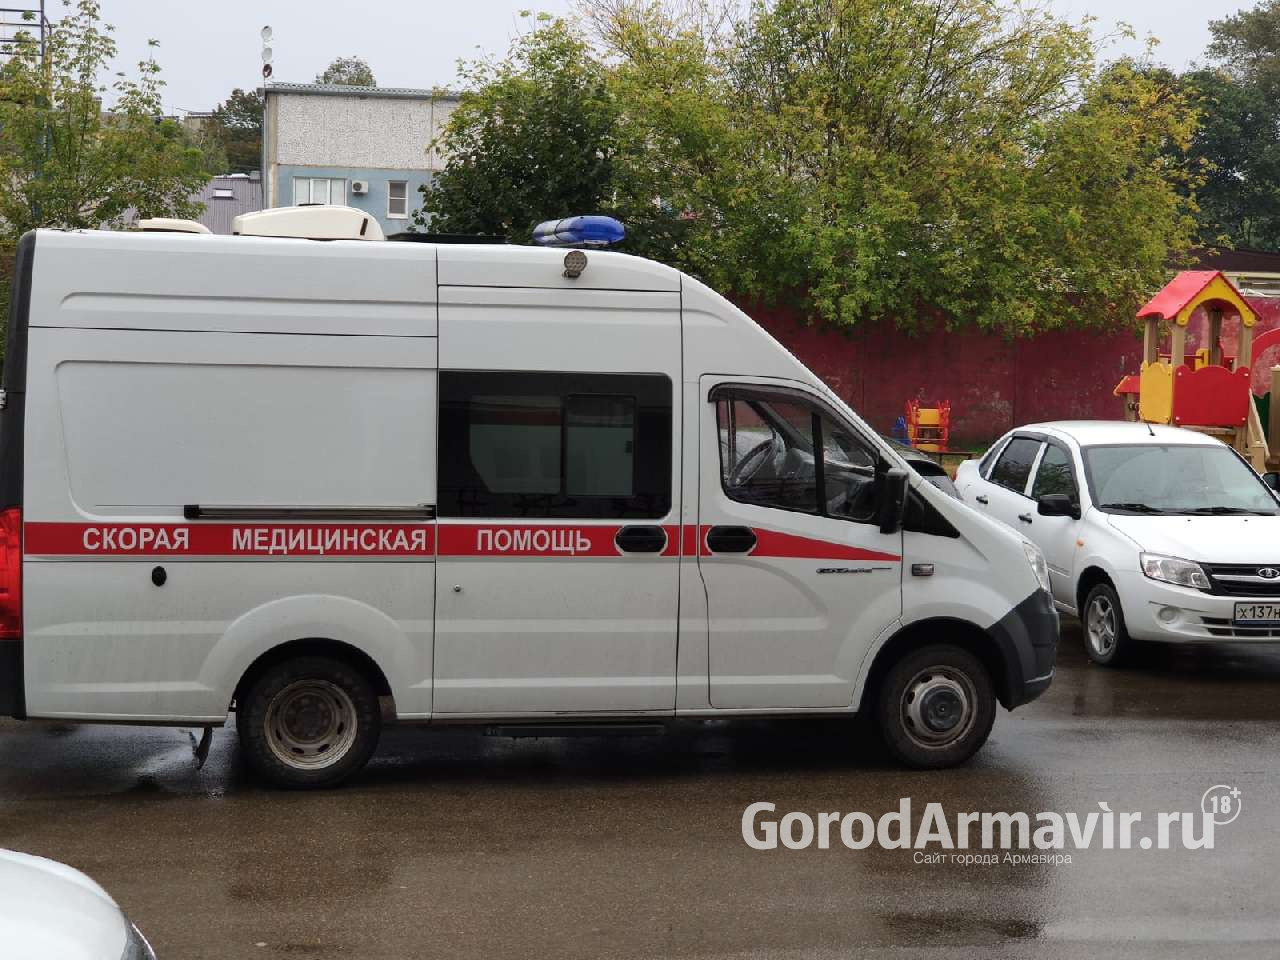 Два человека с ковид-19 госпитализированы в Армавире 